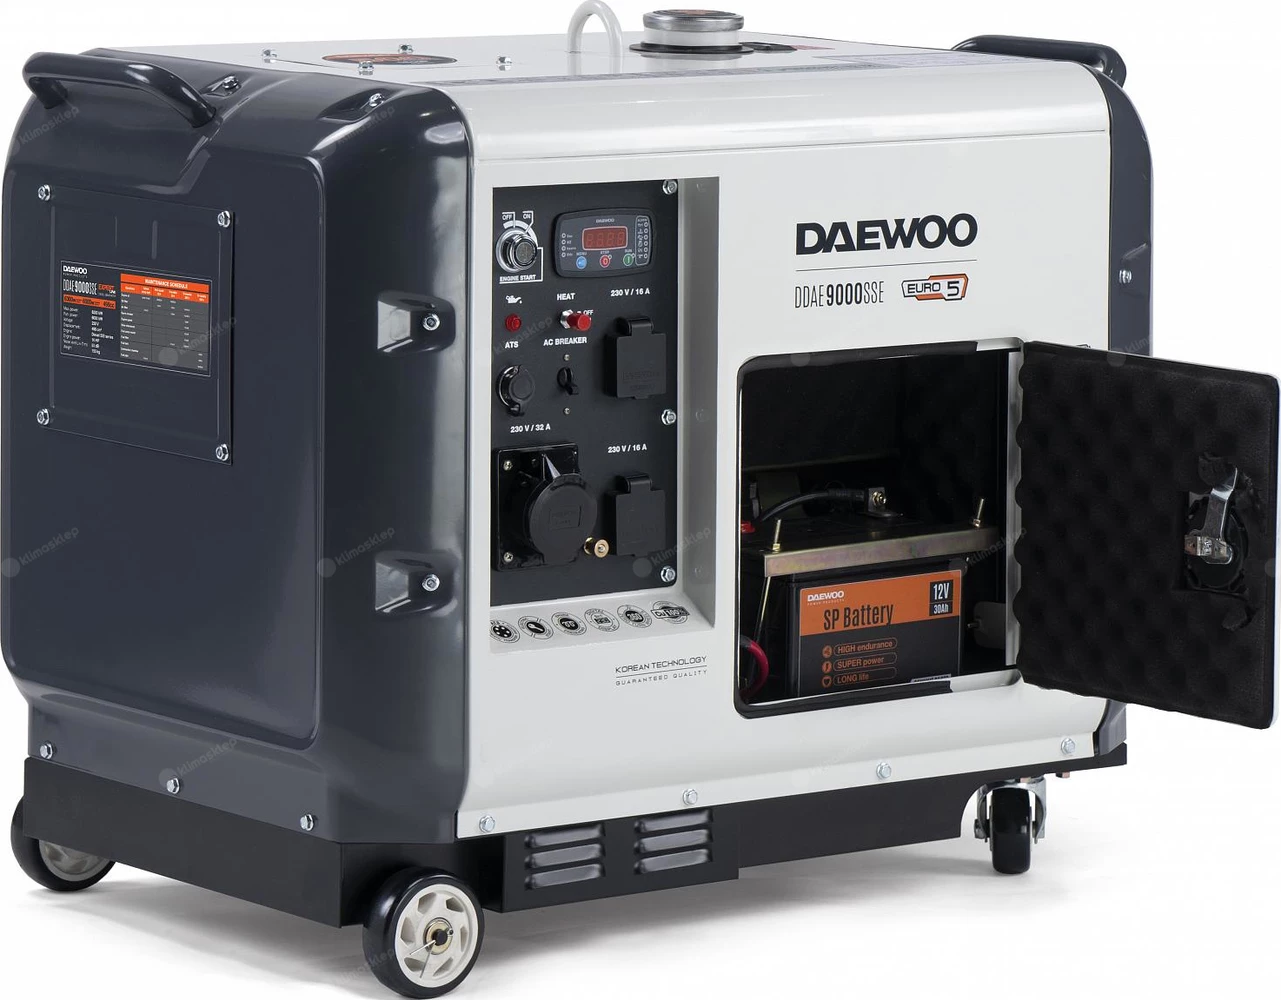 Agregat prądotwórczy Daewoo DDAE 9000SSE w wyciszonej obudowie